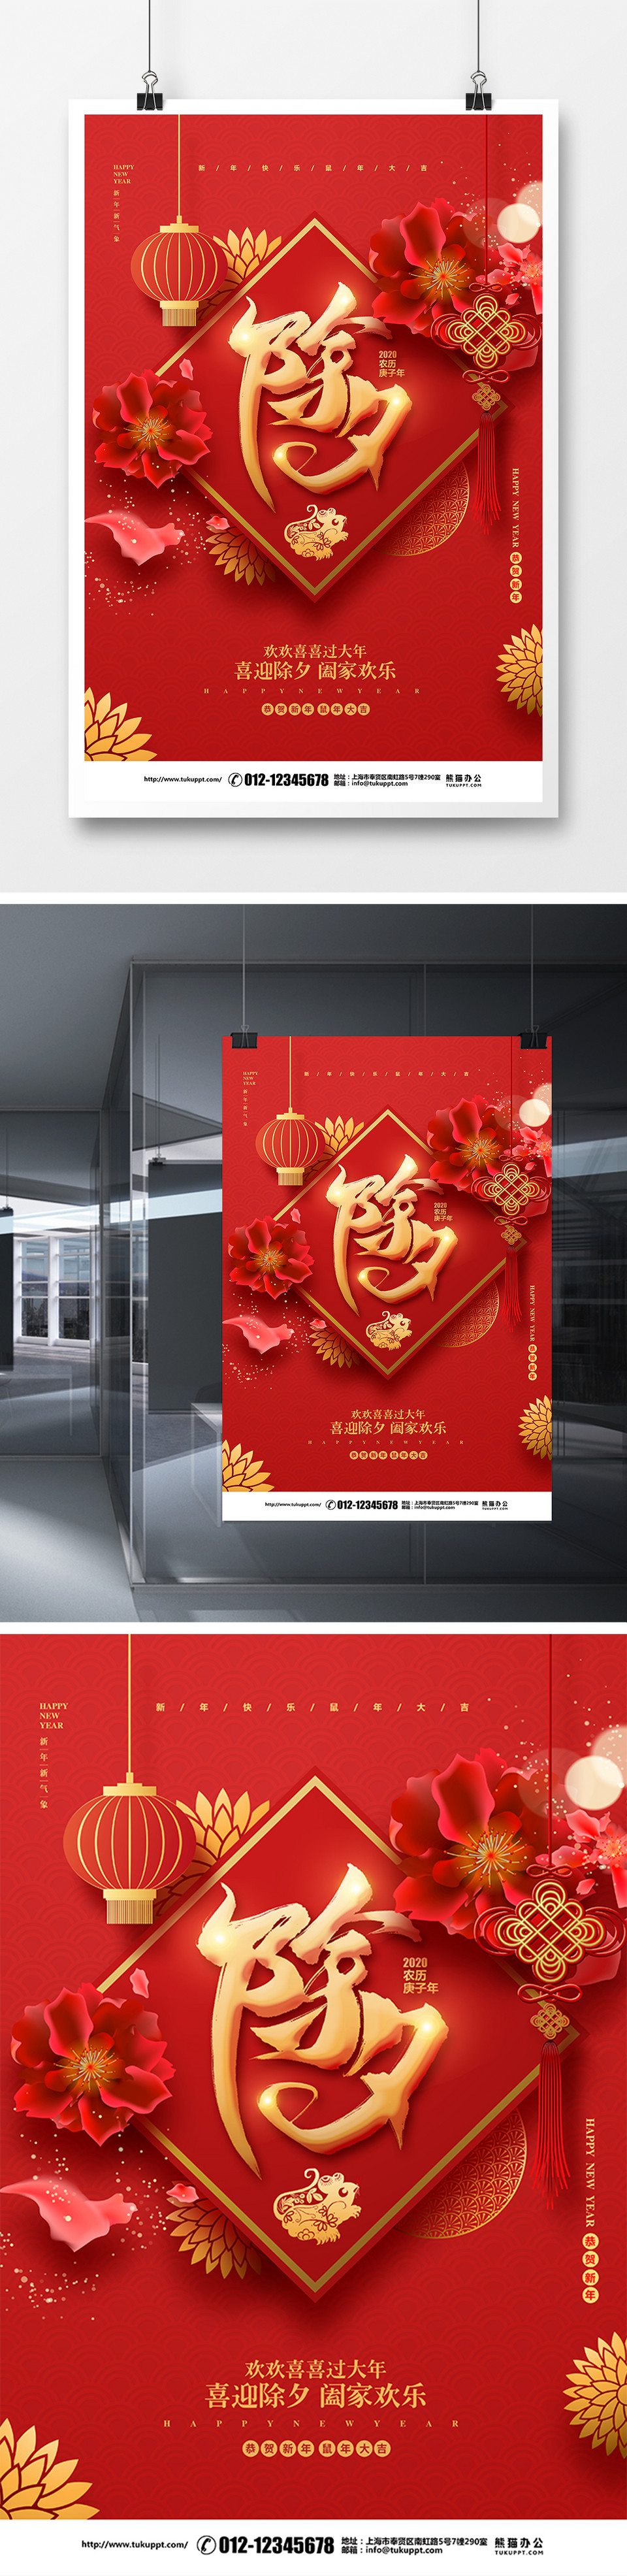 喜庆剪纸传统节日腊月初八腊八节宣传海报设计